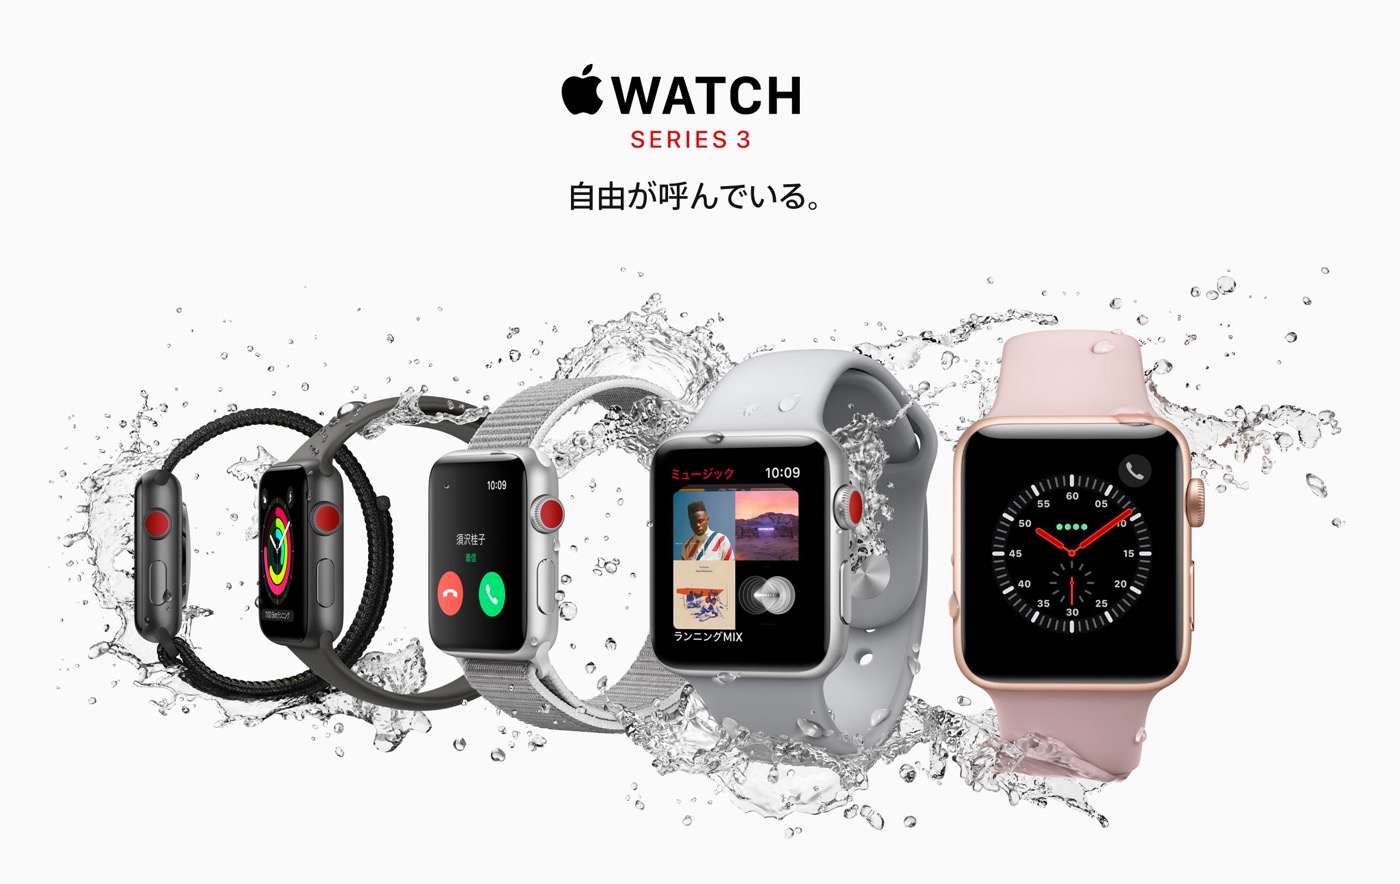 ｢Apple Watch Series 3｣のGPS＋Cellularモデルはストレージ容量が16GBに